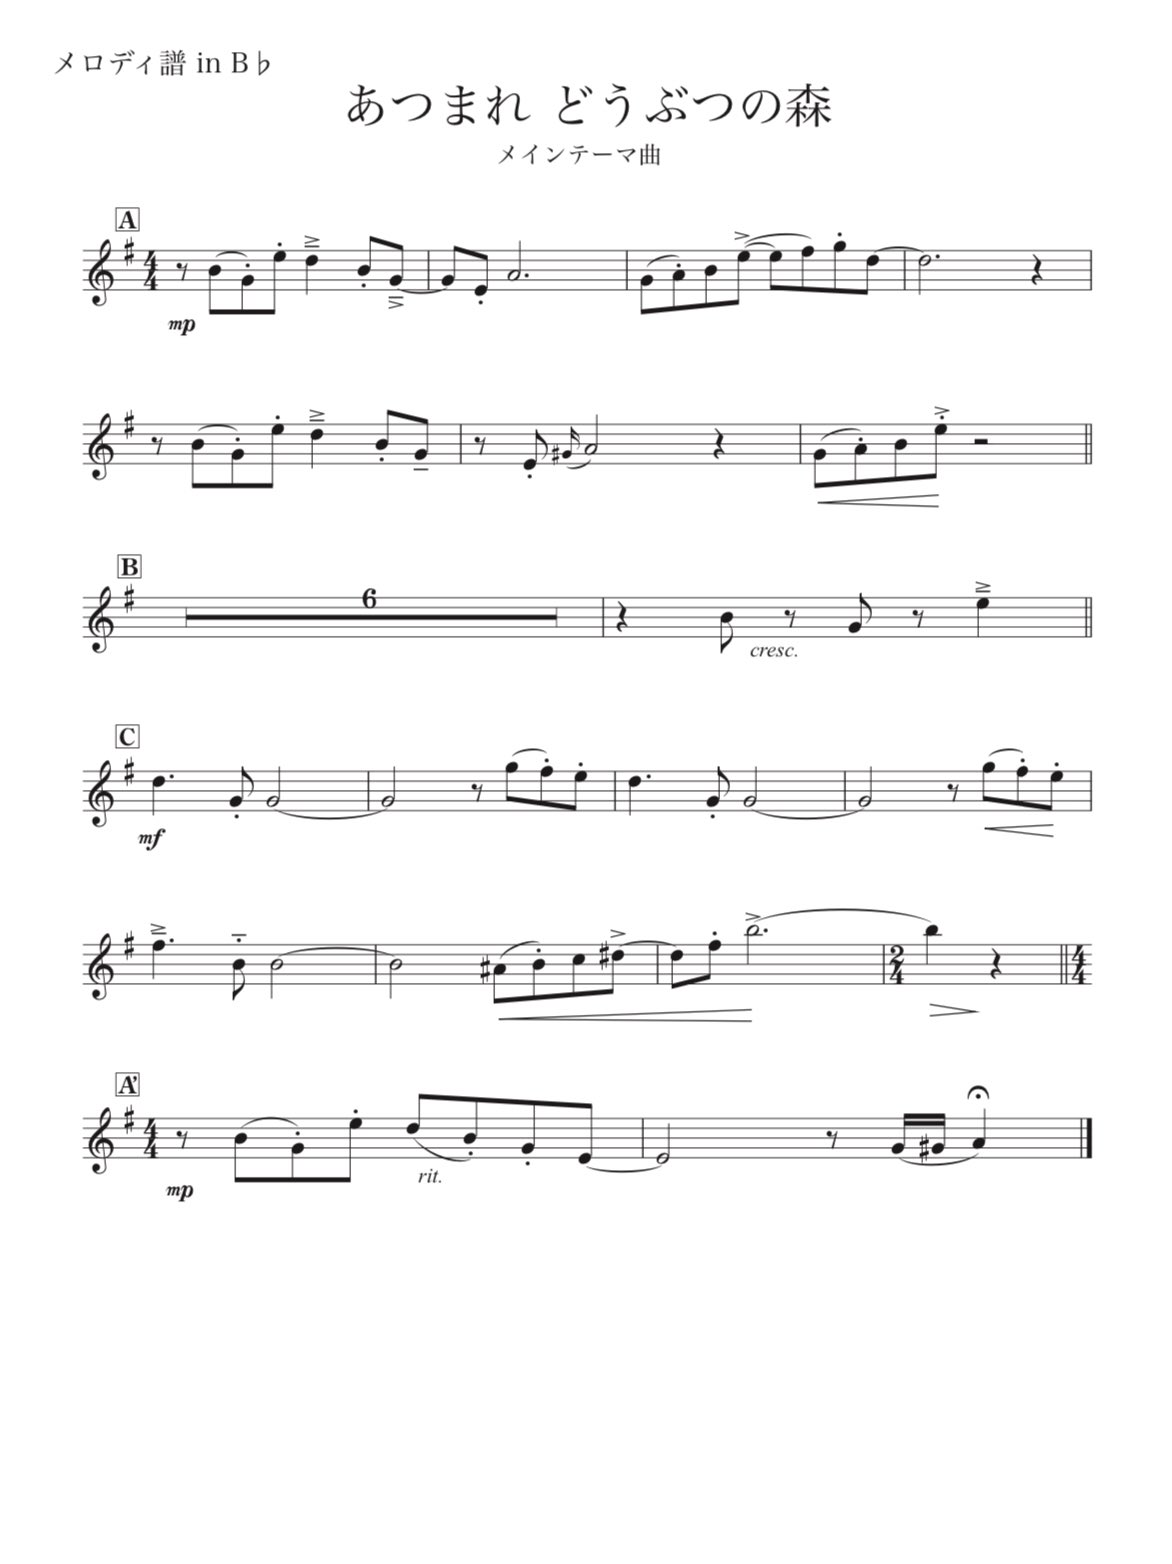 トランペット奏者 秋山璃帆 譜面無料ダウンロードはコチラ あつまれ動物の森のメインテーマを耳コピしてみました 本家のアーティキュレーションを細かく記載してあるのでカバー演奏の際に参考になれば嬉しいです メロディ譜 In B メロディ譜